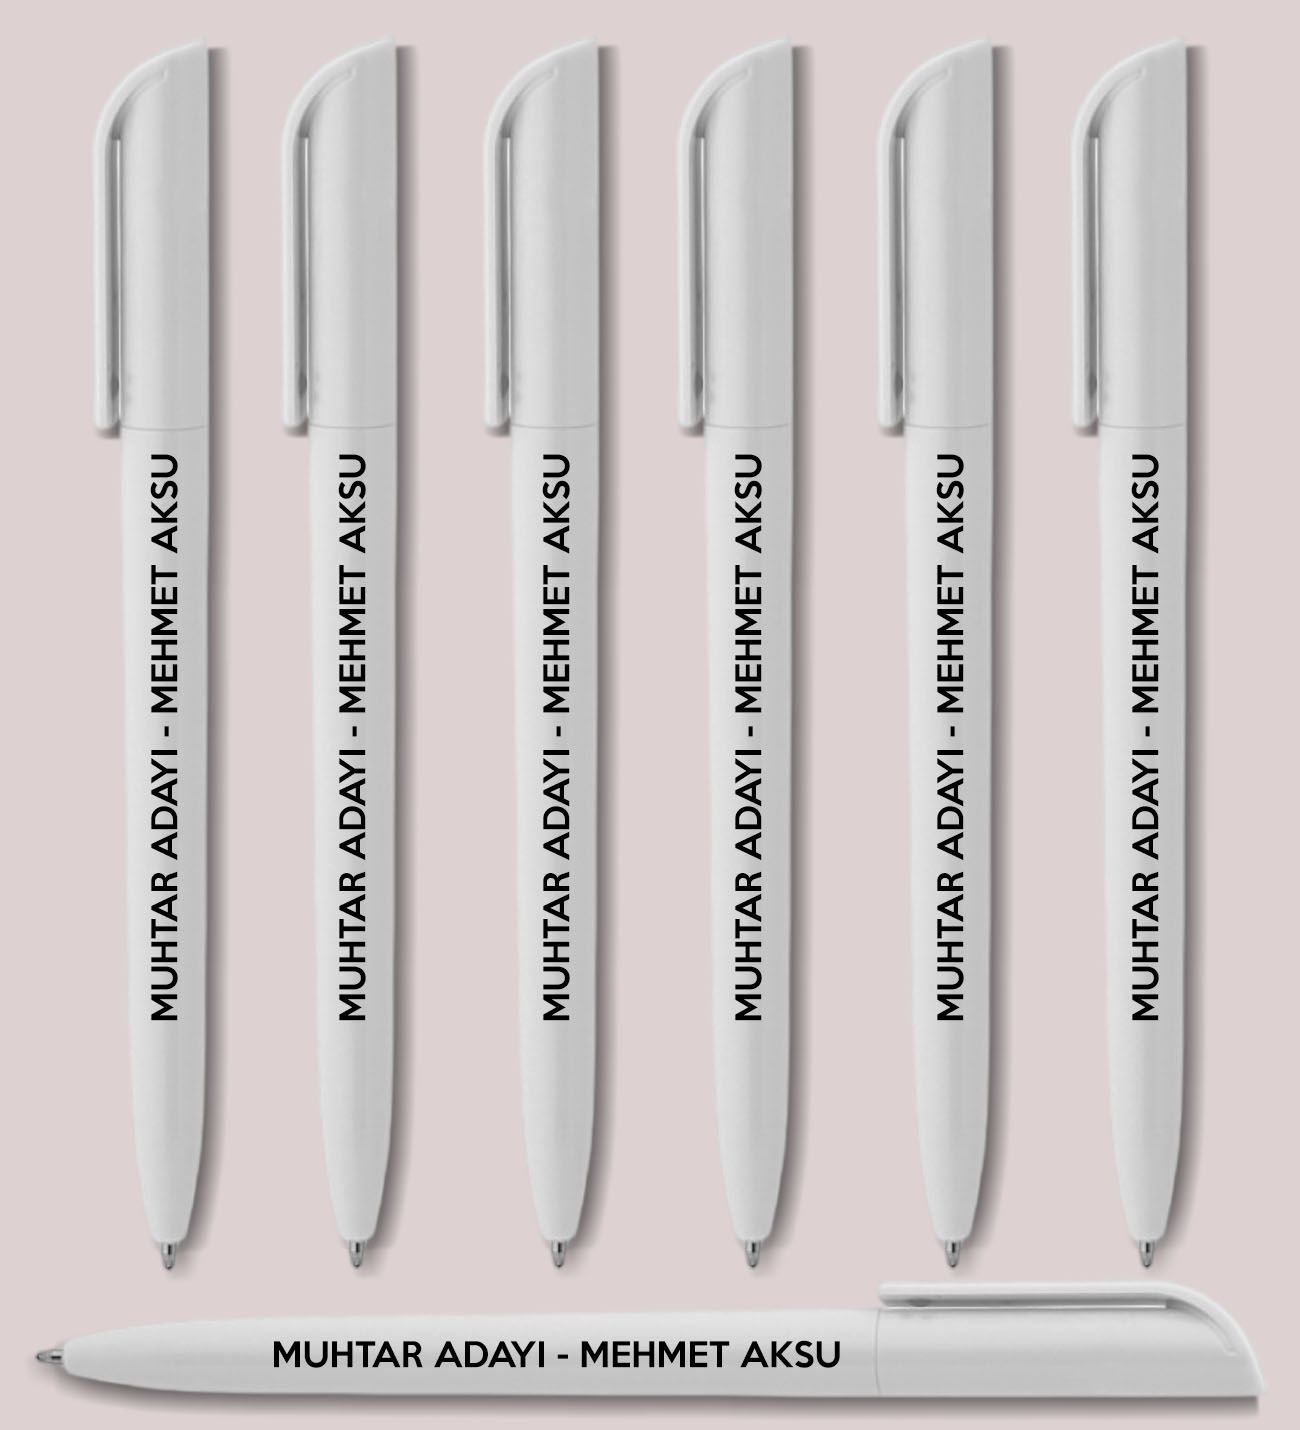 Muhtar Adaylarına Özel Promosyon Beyaz Plastik Tükenmez Kalem, Seçim Promosyon Ürünleri (100 Adet)